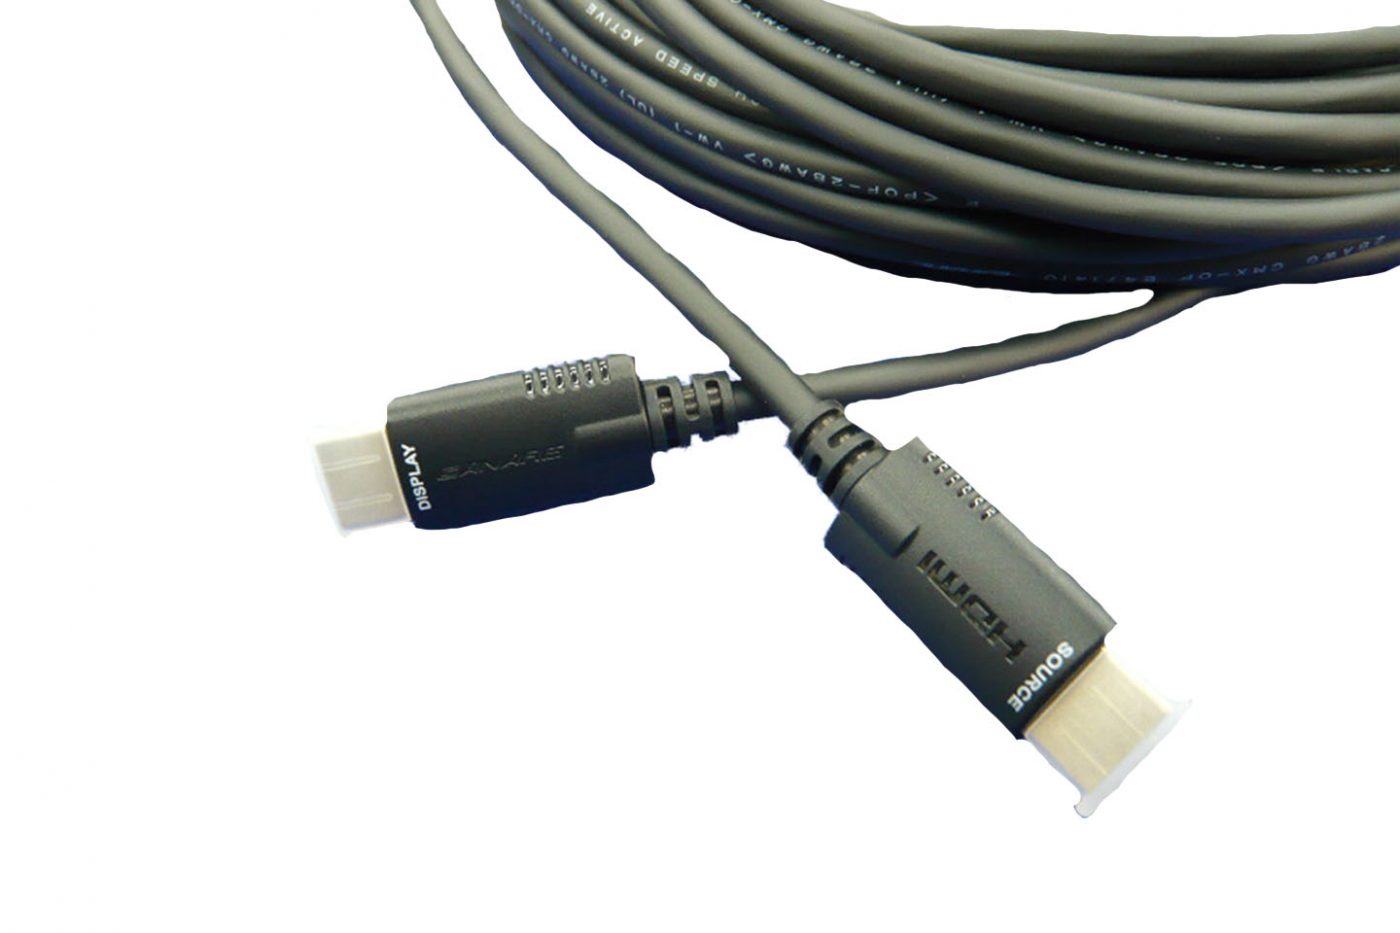 フルHD 4K30Hzまでに対応したHDMI光ファイバーケーブル ラトックシステム HDMI光ファイバーケーブル 4K30Hz対応 20m